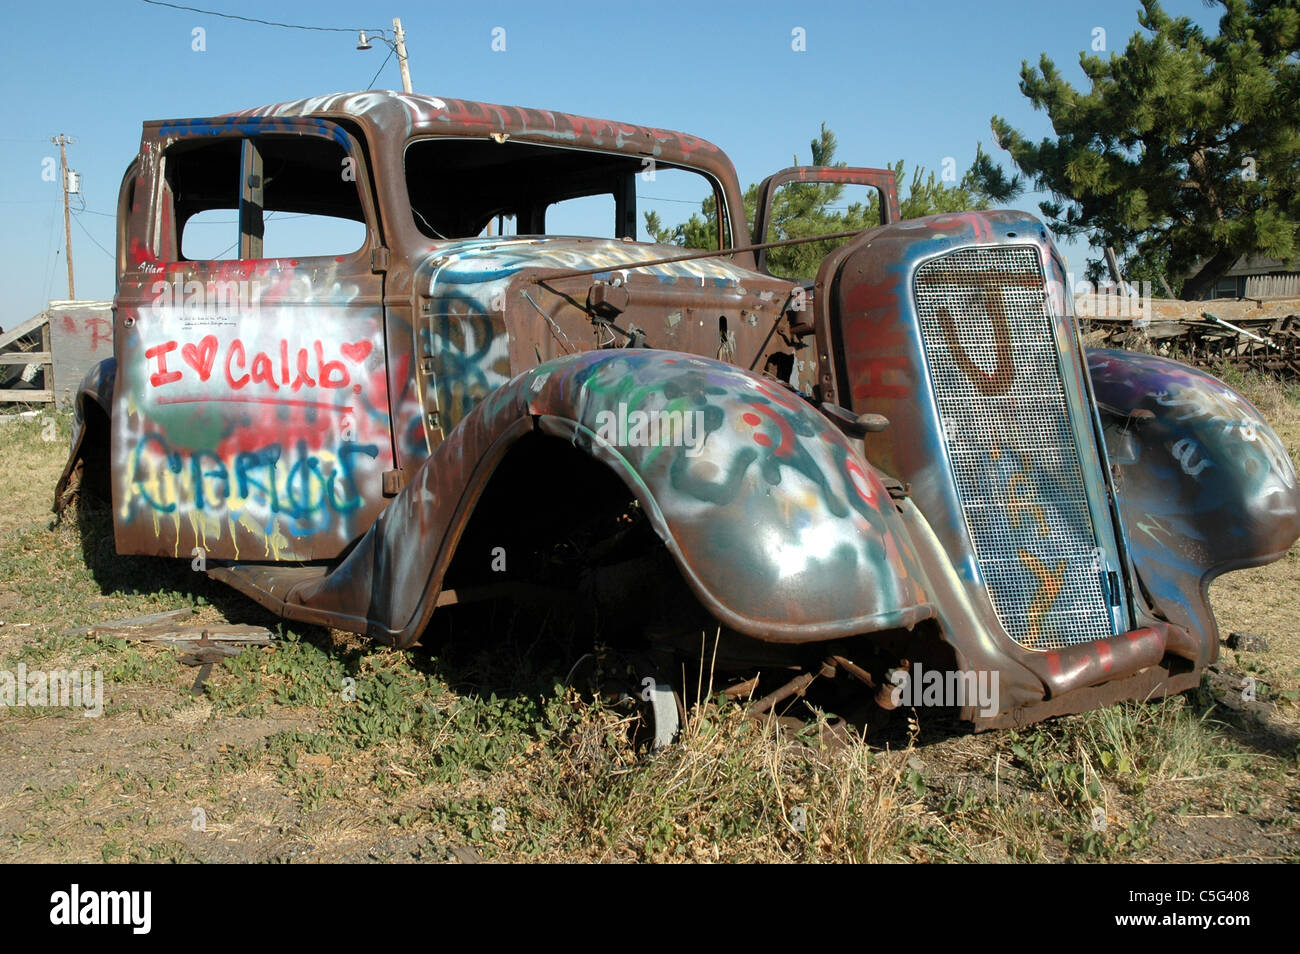 Este1933 Ford Coupe es un destino para el vandalismo de la gente que pase. El coche se asienta a lo largo de la ruta 66 cerca de Amarillo. Foto de stock